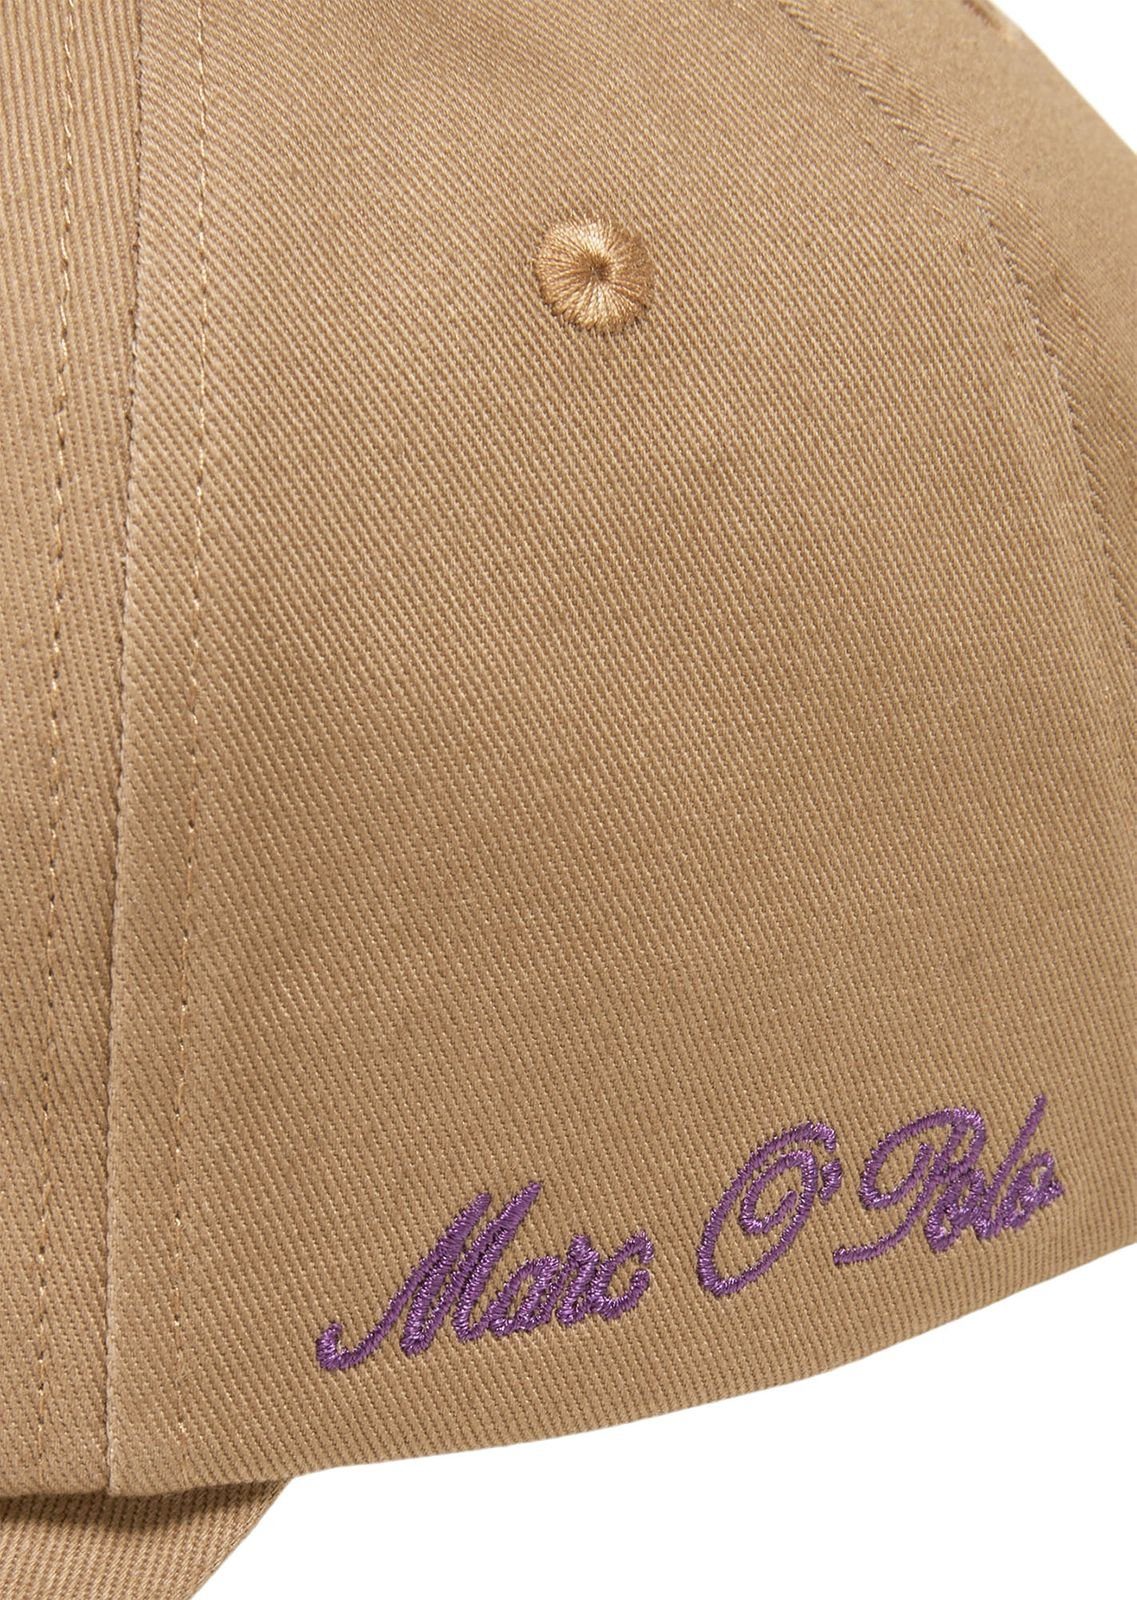 Baseball Brown O'Polo Embroidery Casabella Marc Cap